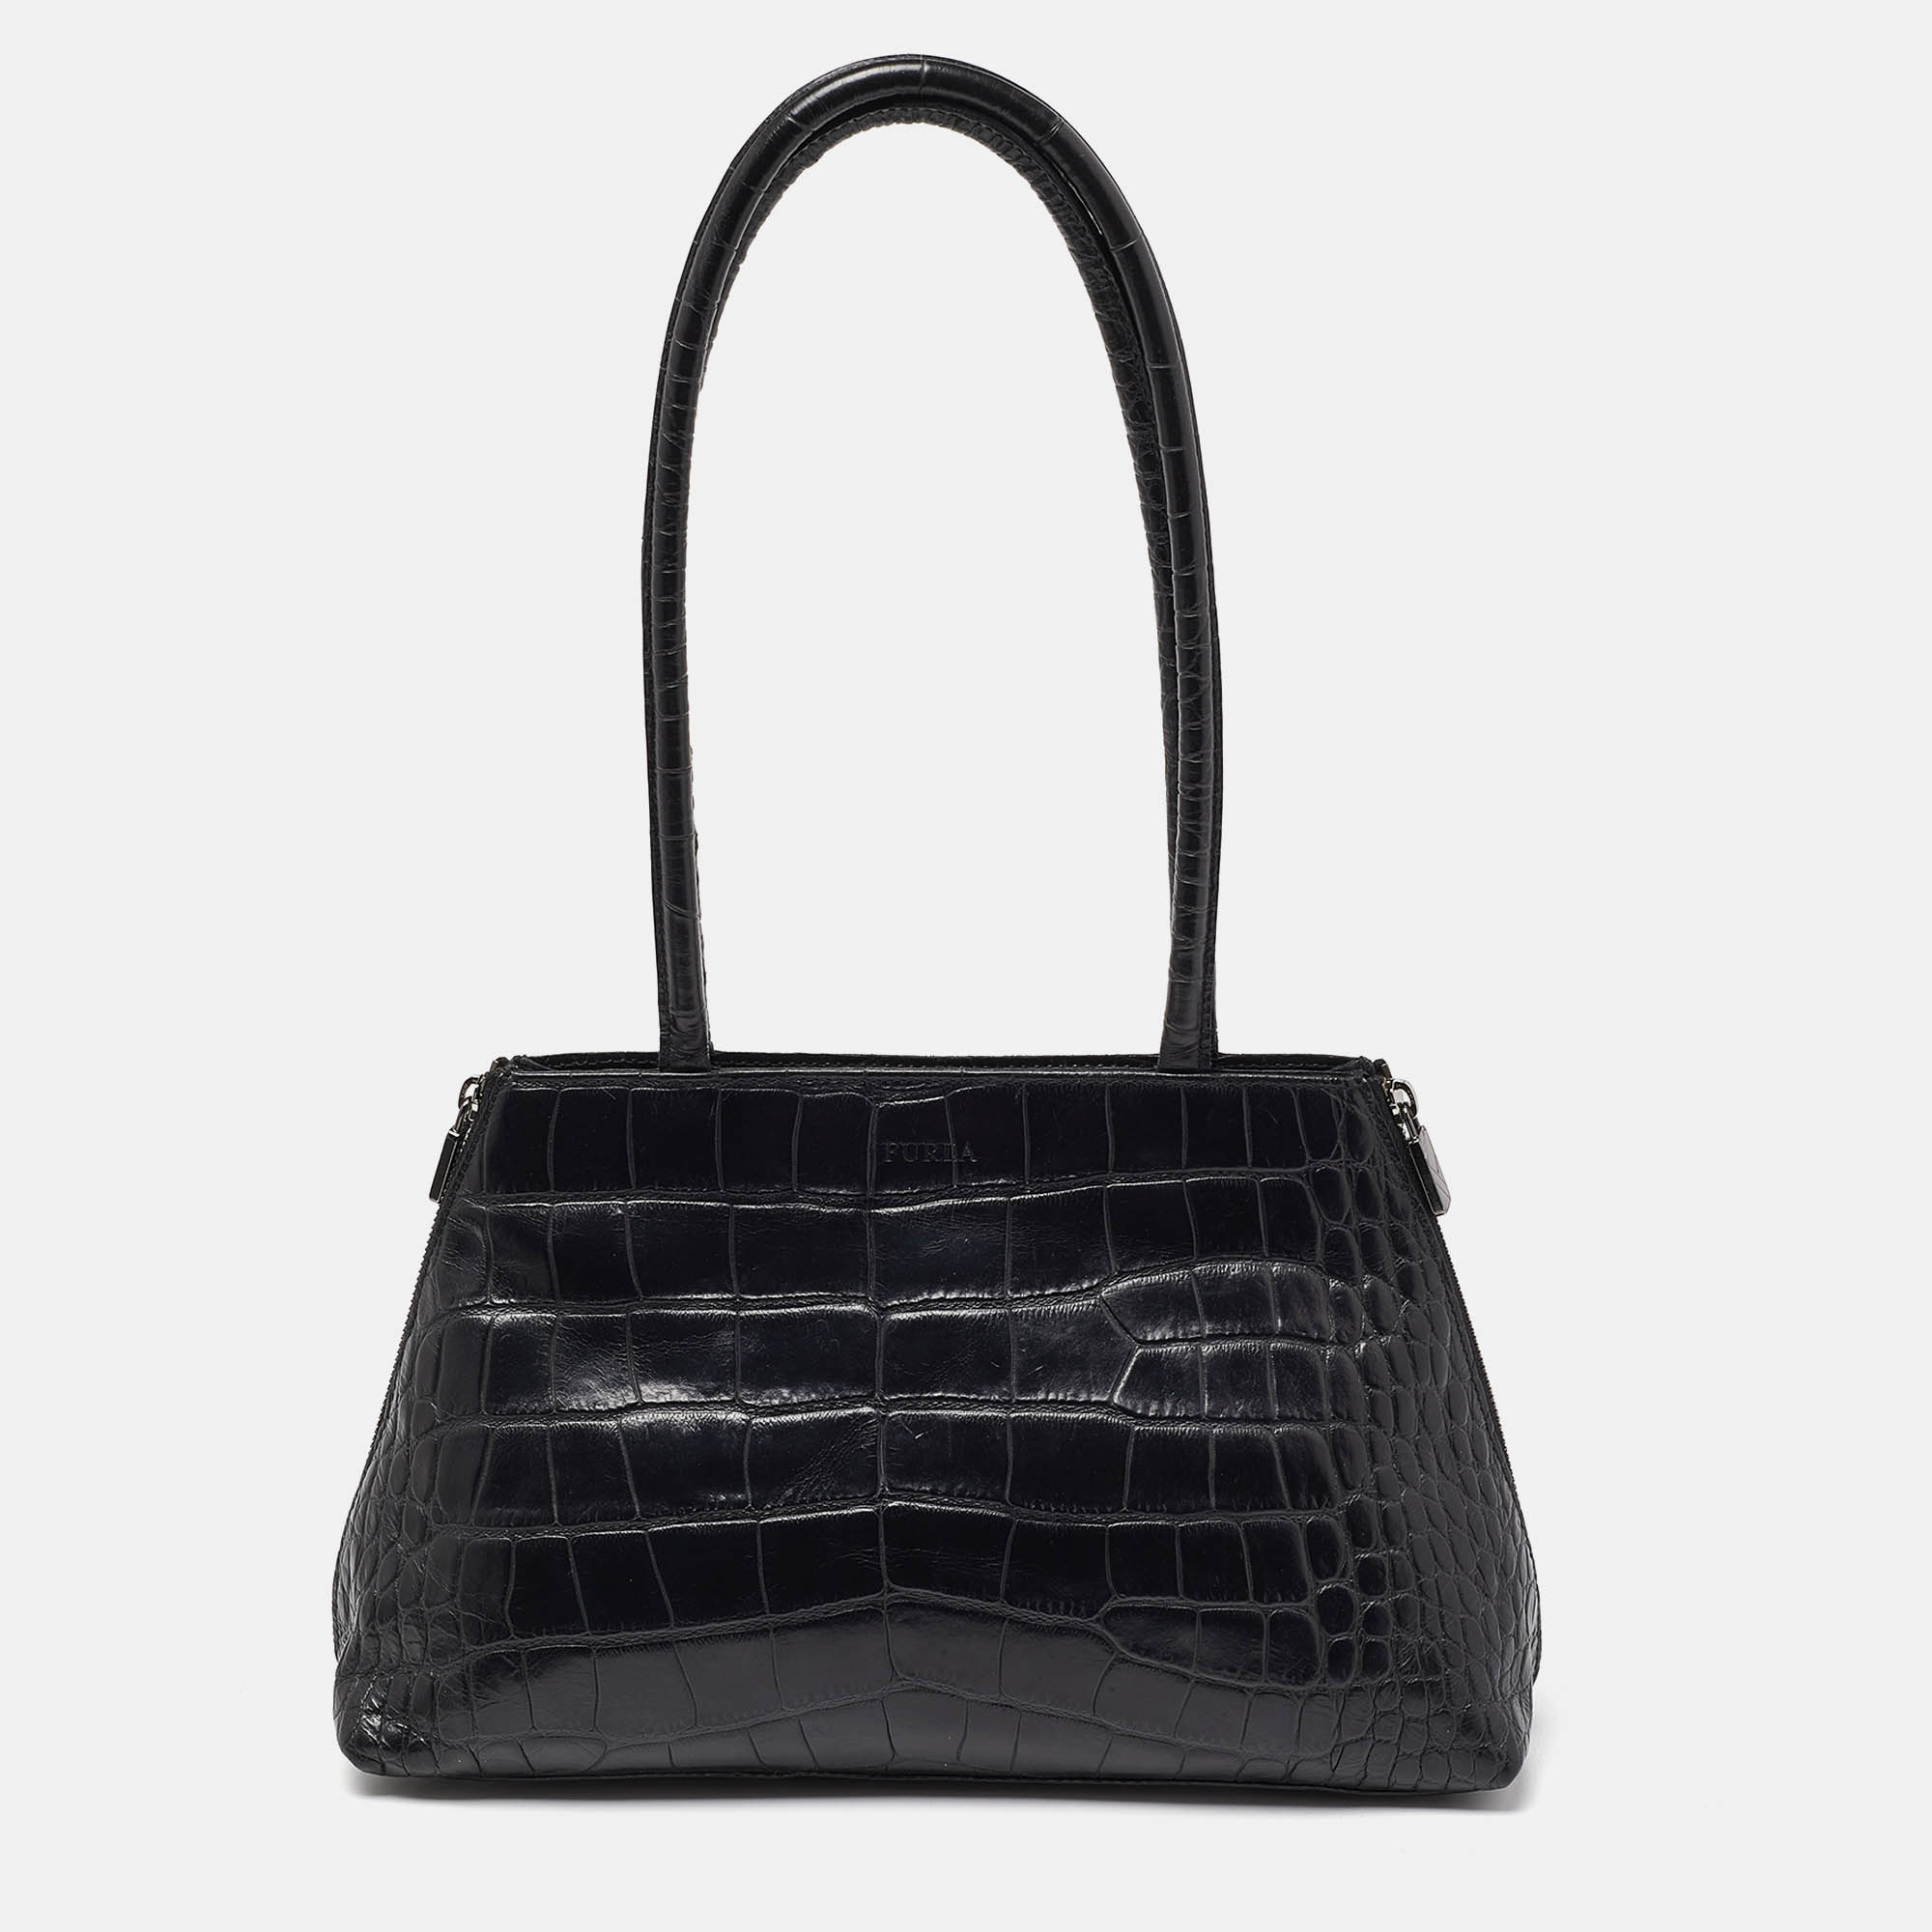 Furla black croc embossed leather vintage shoulder bag